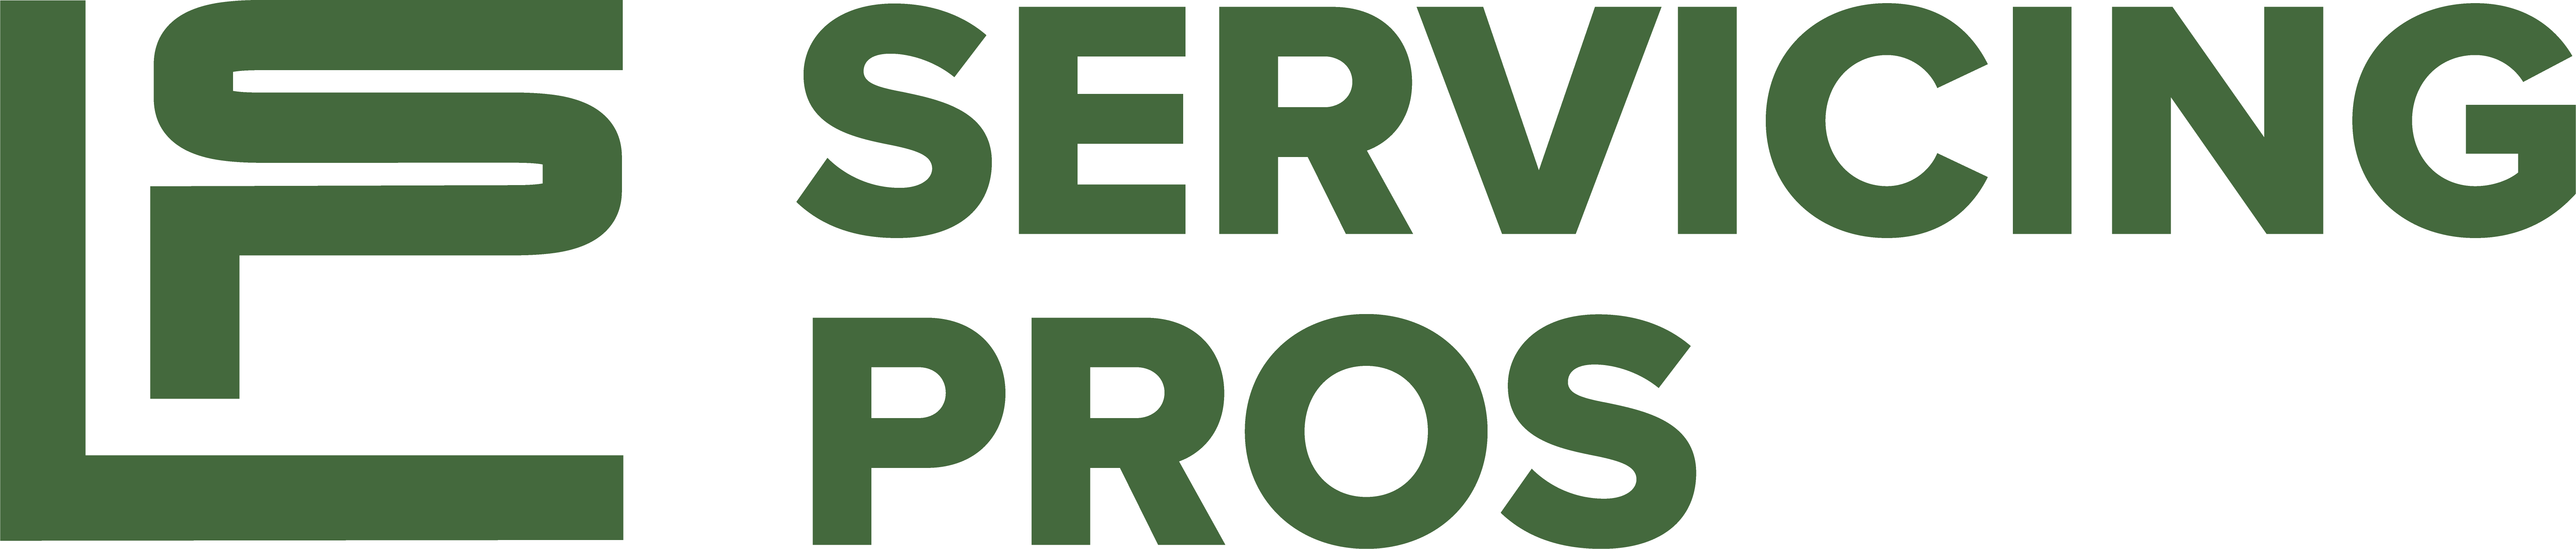 Servicing Pros Logo